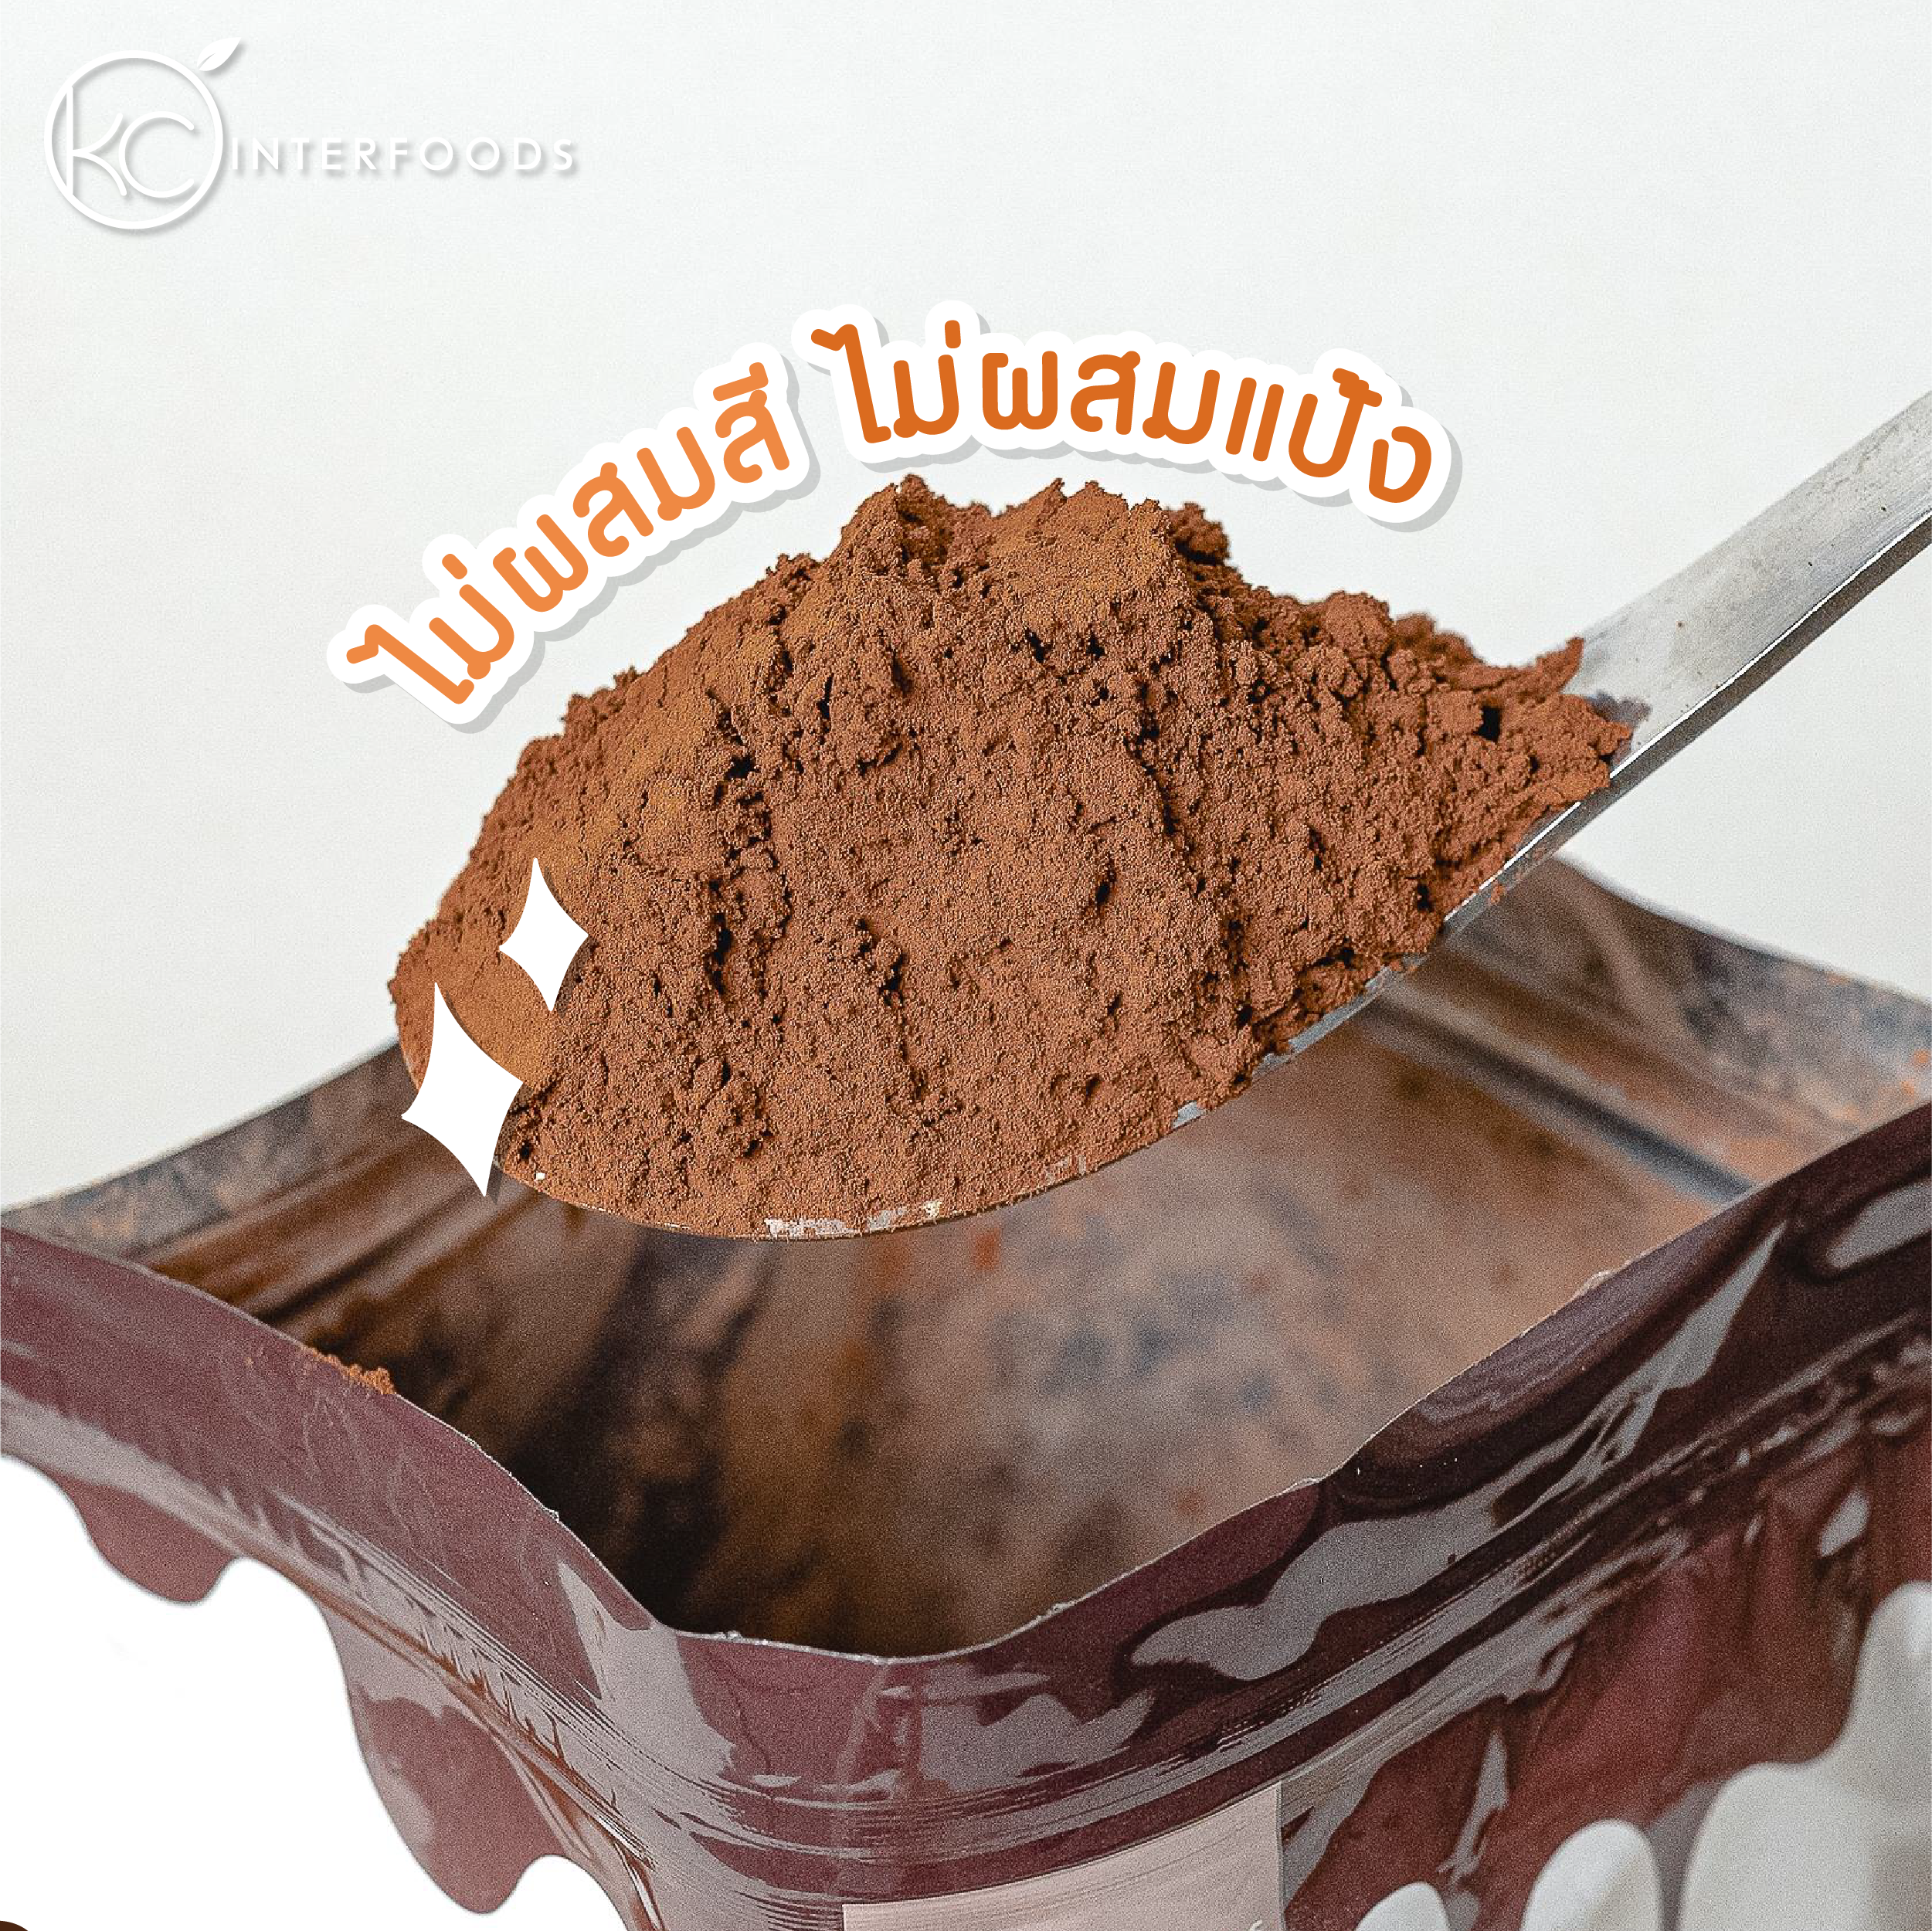 ผงโกโก้ 100% เกรดพรีเมียมสีเข้ม 500 กรัม (Premium Cocoa Powder 100%)